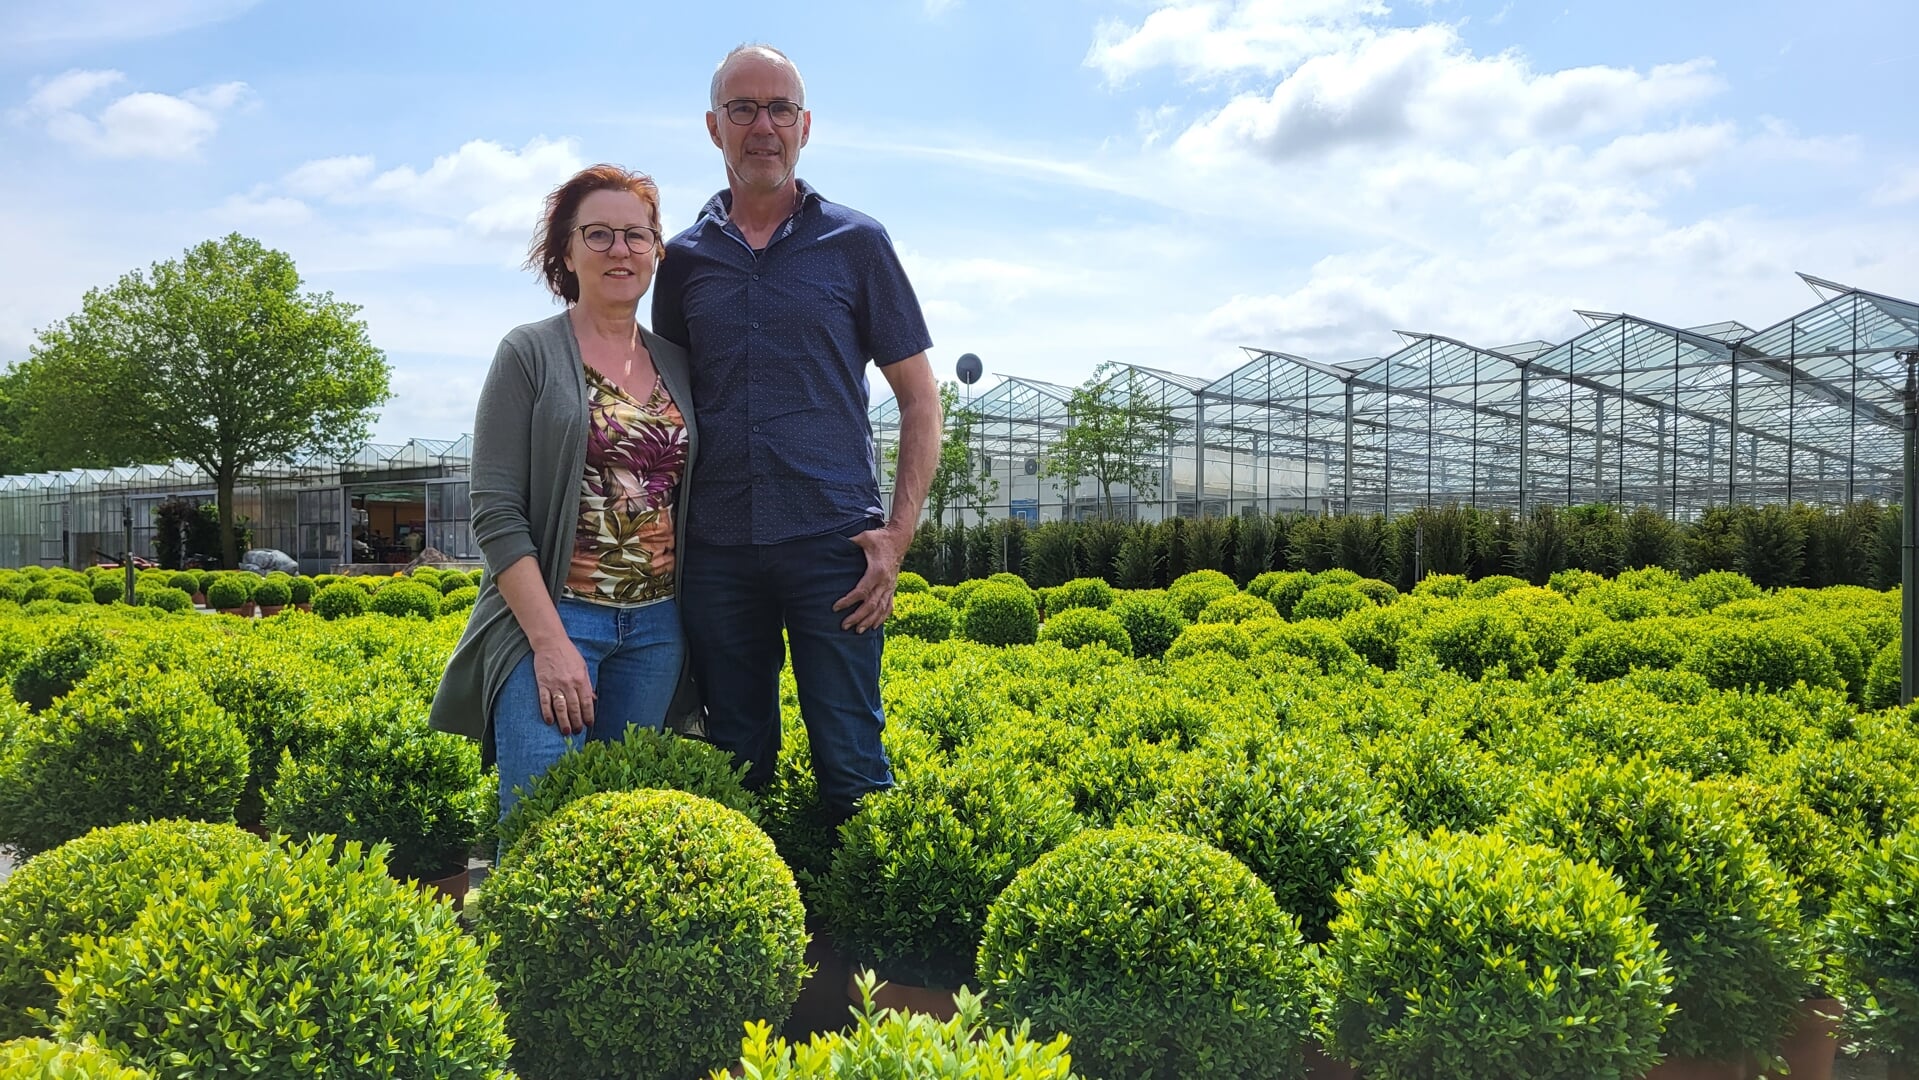 Geert en Els staan al 25 jaar aan het roer van de Wanroijse boomkwekerij. Die mijlpaal willen ze graag vieren.